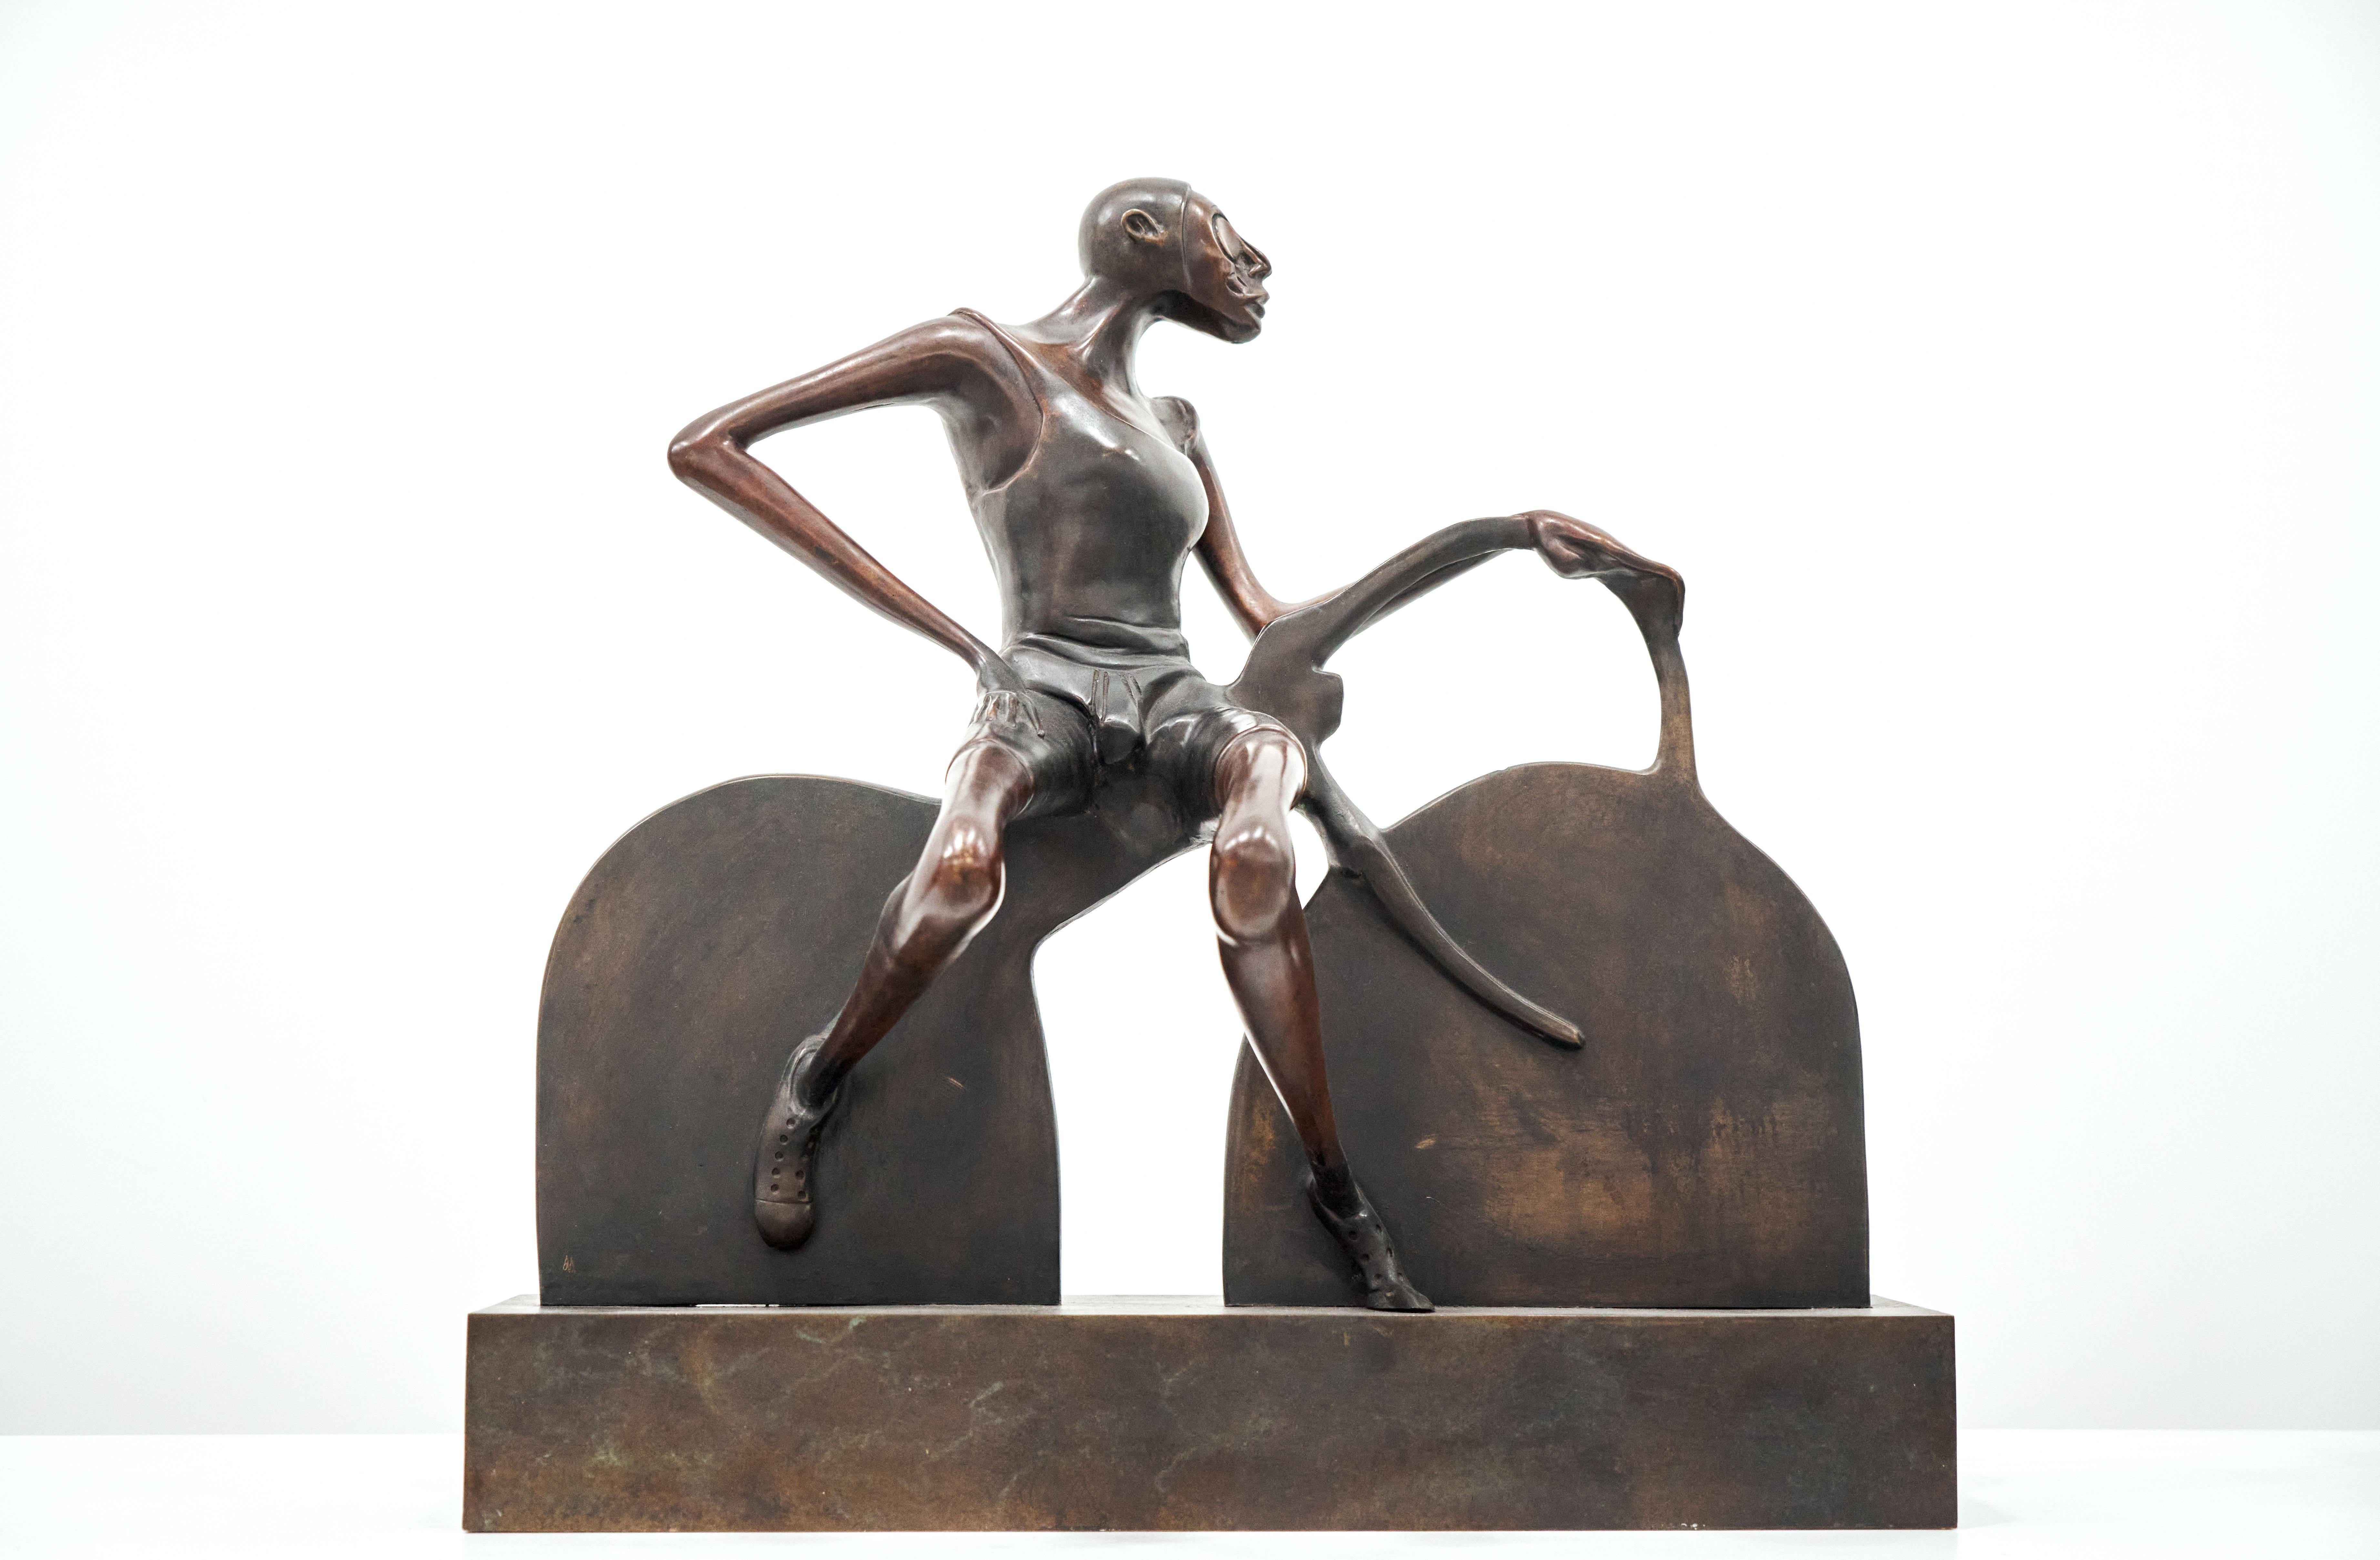 Figurative Sculpture Jorge Seguí  - Jorge Seguí, Ciclista IX, bronze, édition 7/7, 1990-1995